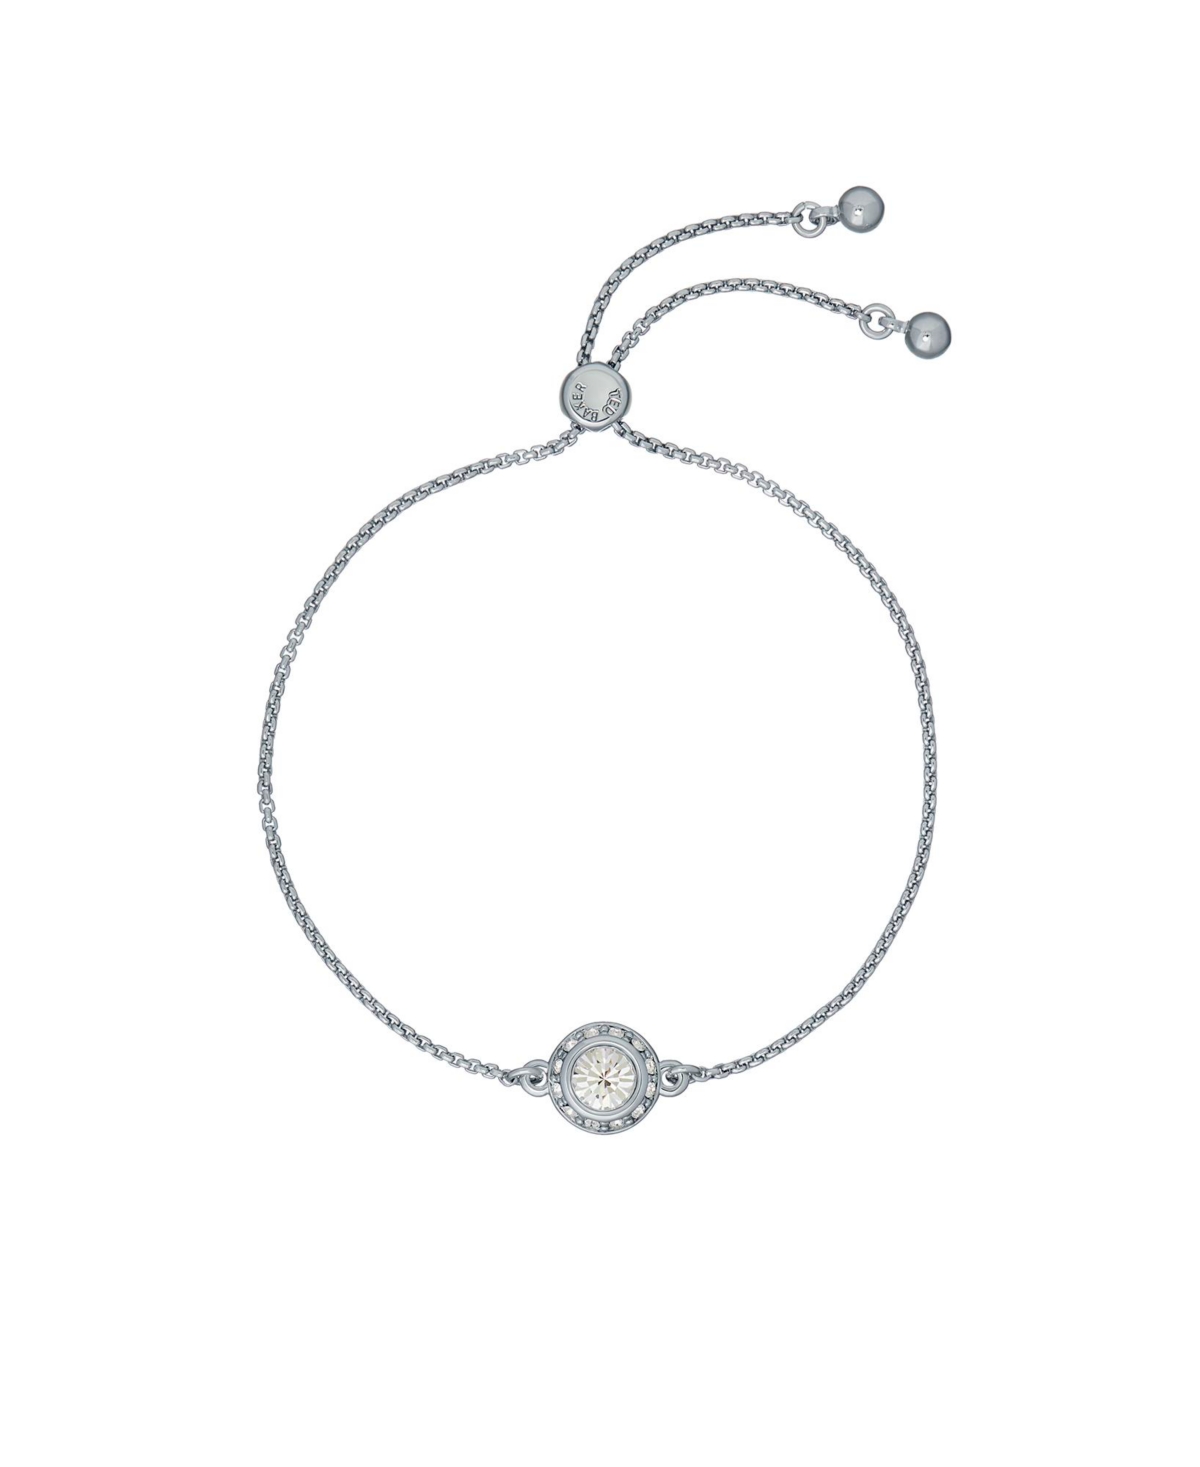 Soleta: Solitaire Sparkle Crystal Adjustable Bracelet - Rose gold